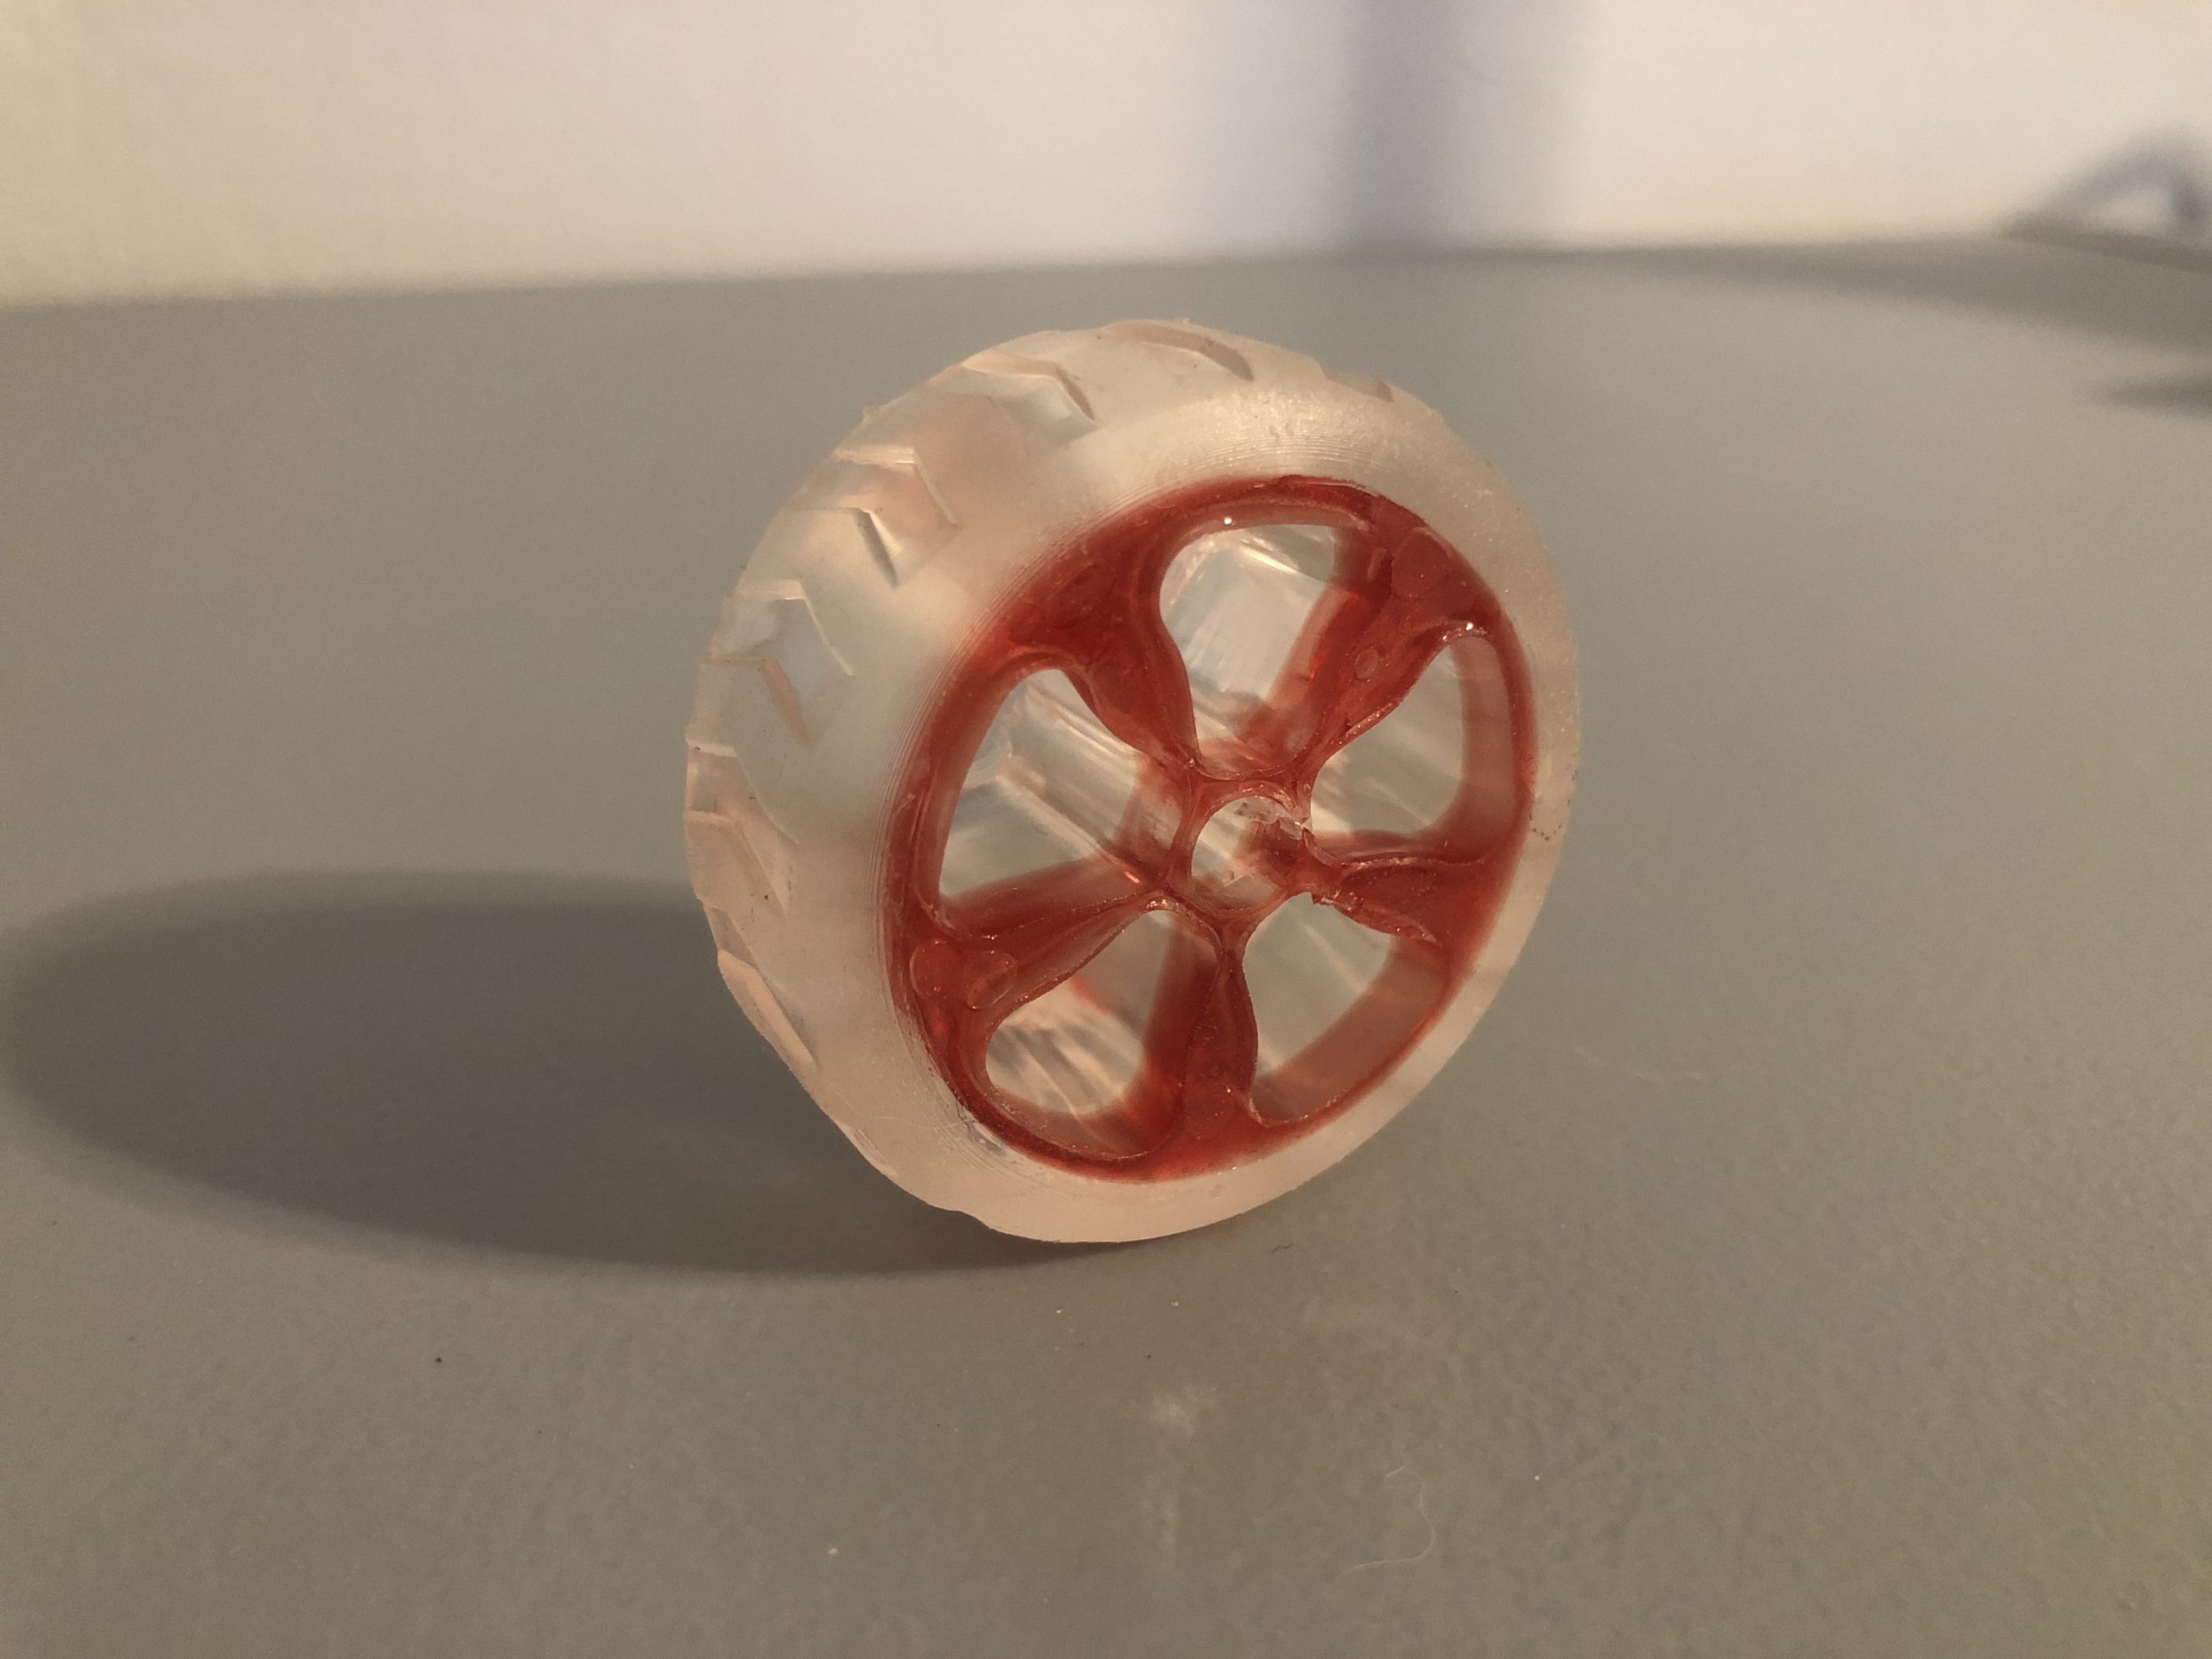 Multi-material resin 3D printing